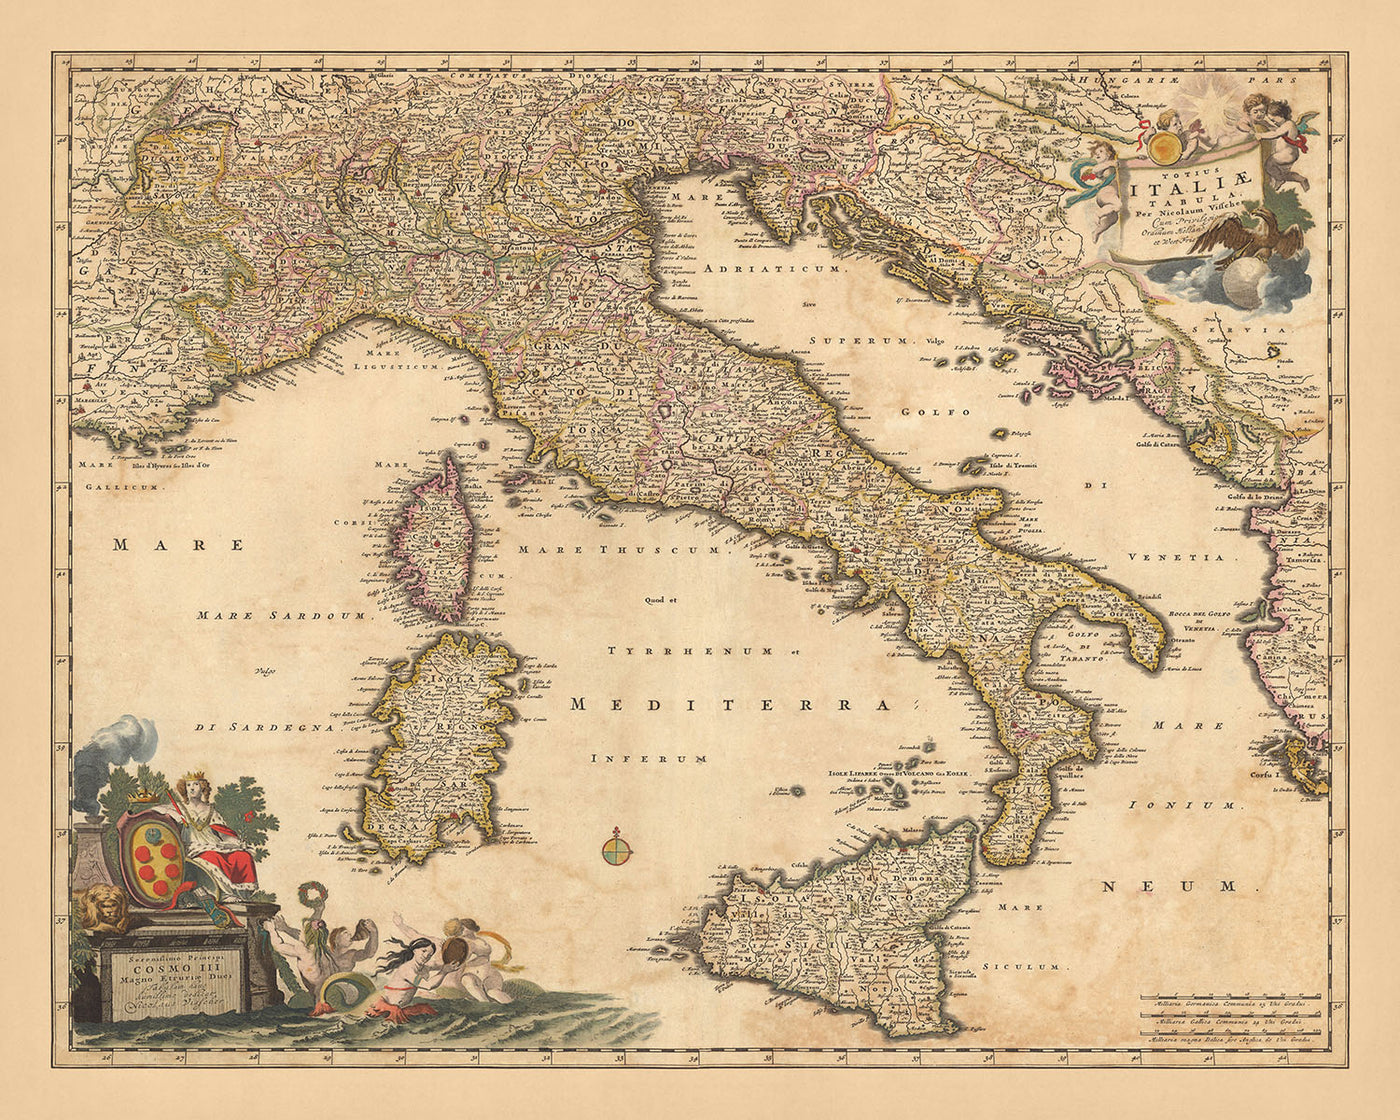 Alte Karte von Italien von Visscher, 1690: Rom, Mailand, Palermo, Florenz, Monaco